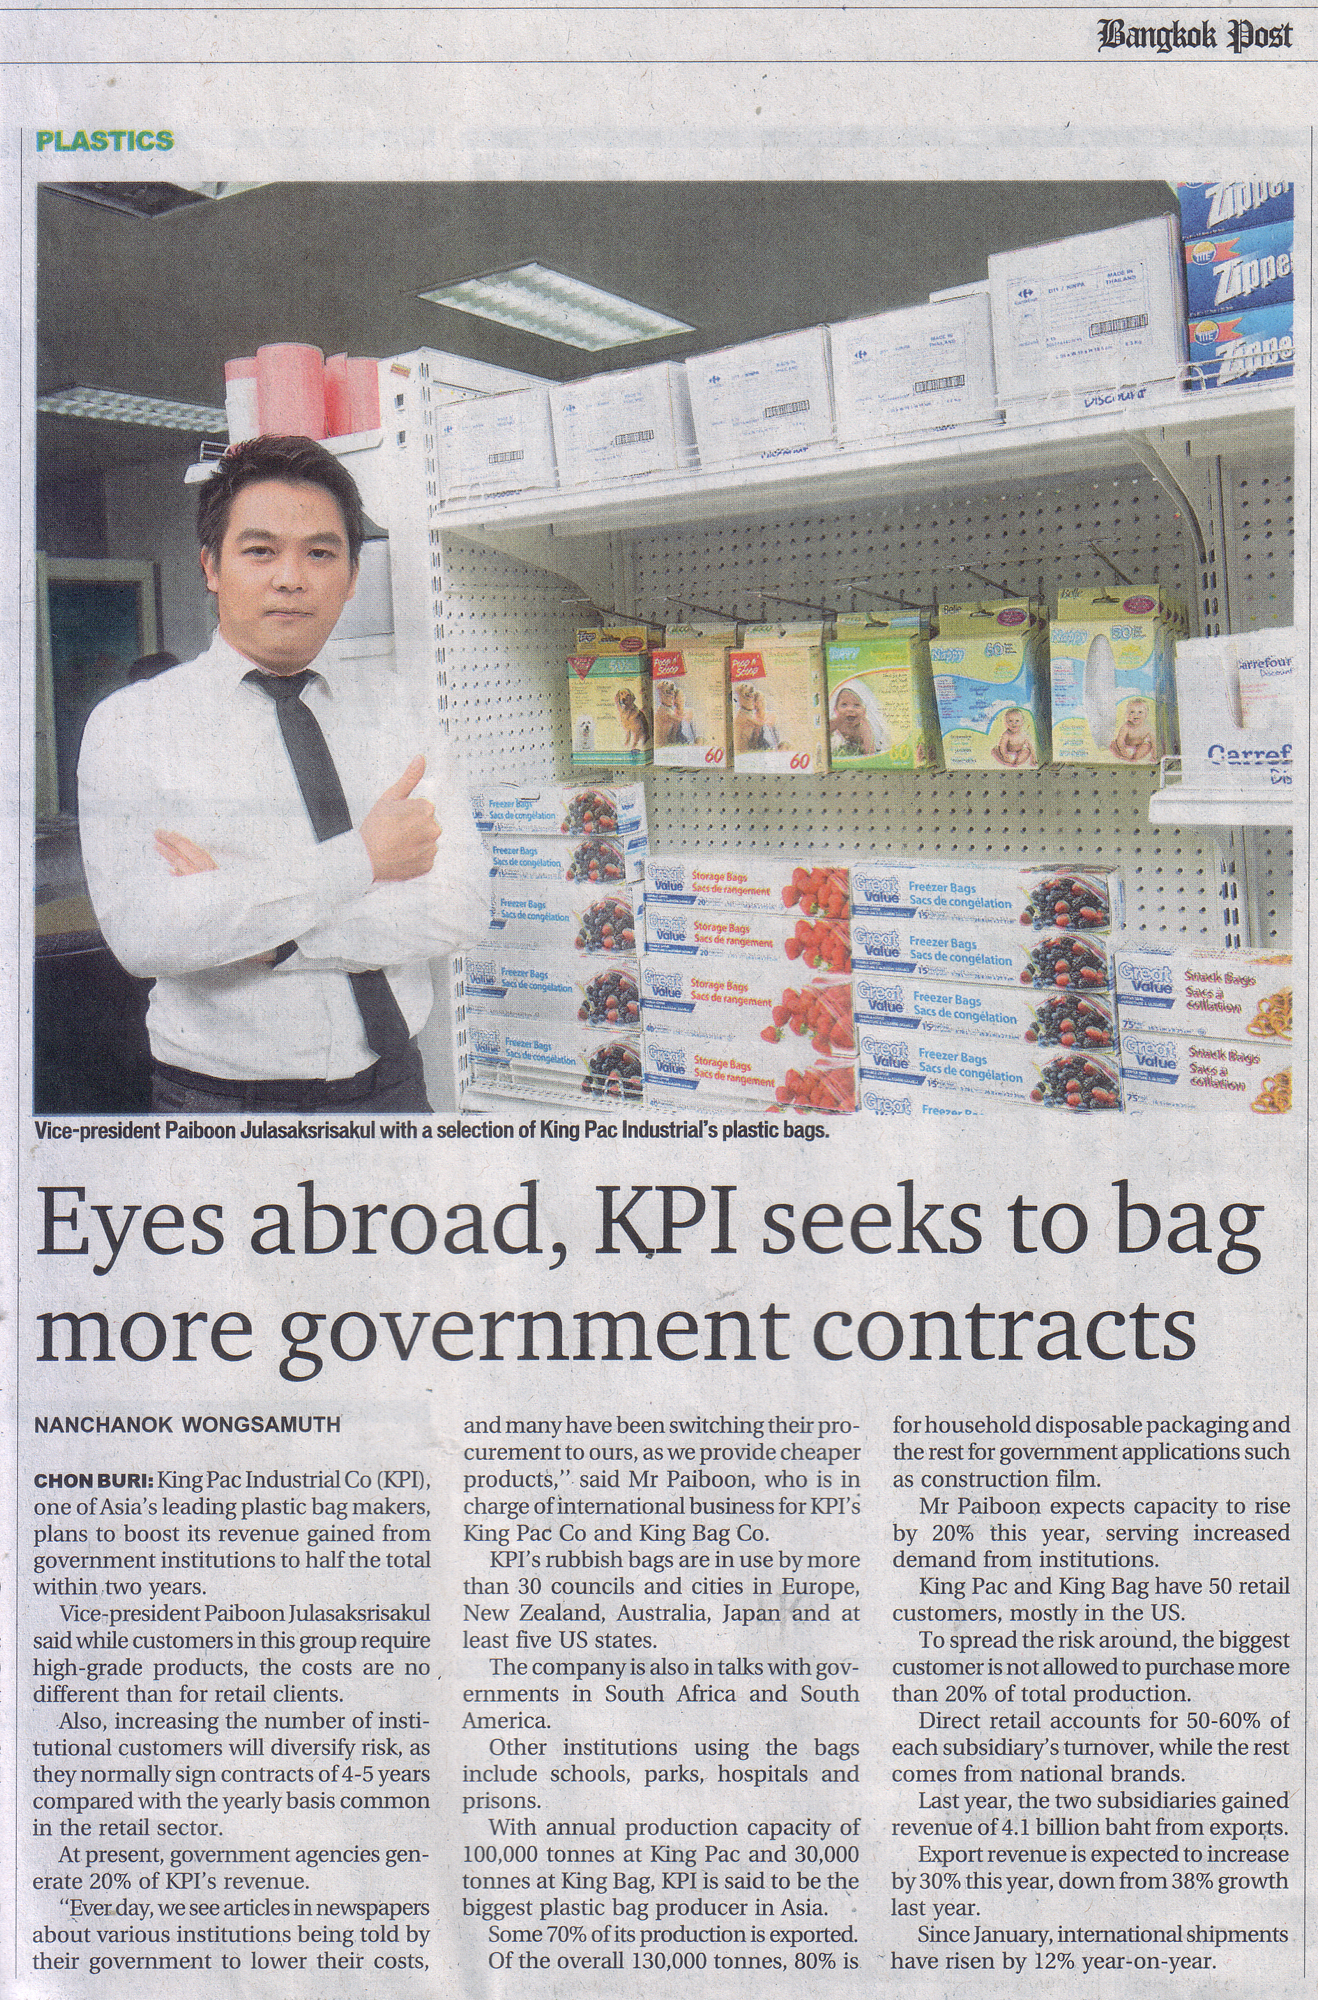 PJ paiboon julasaksrisakul king pac industrial bangkok post 11 may 2013